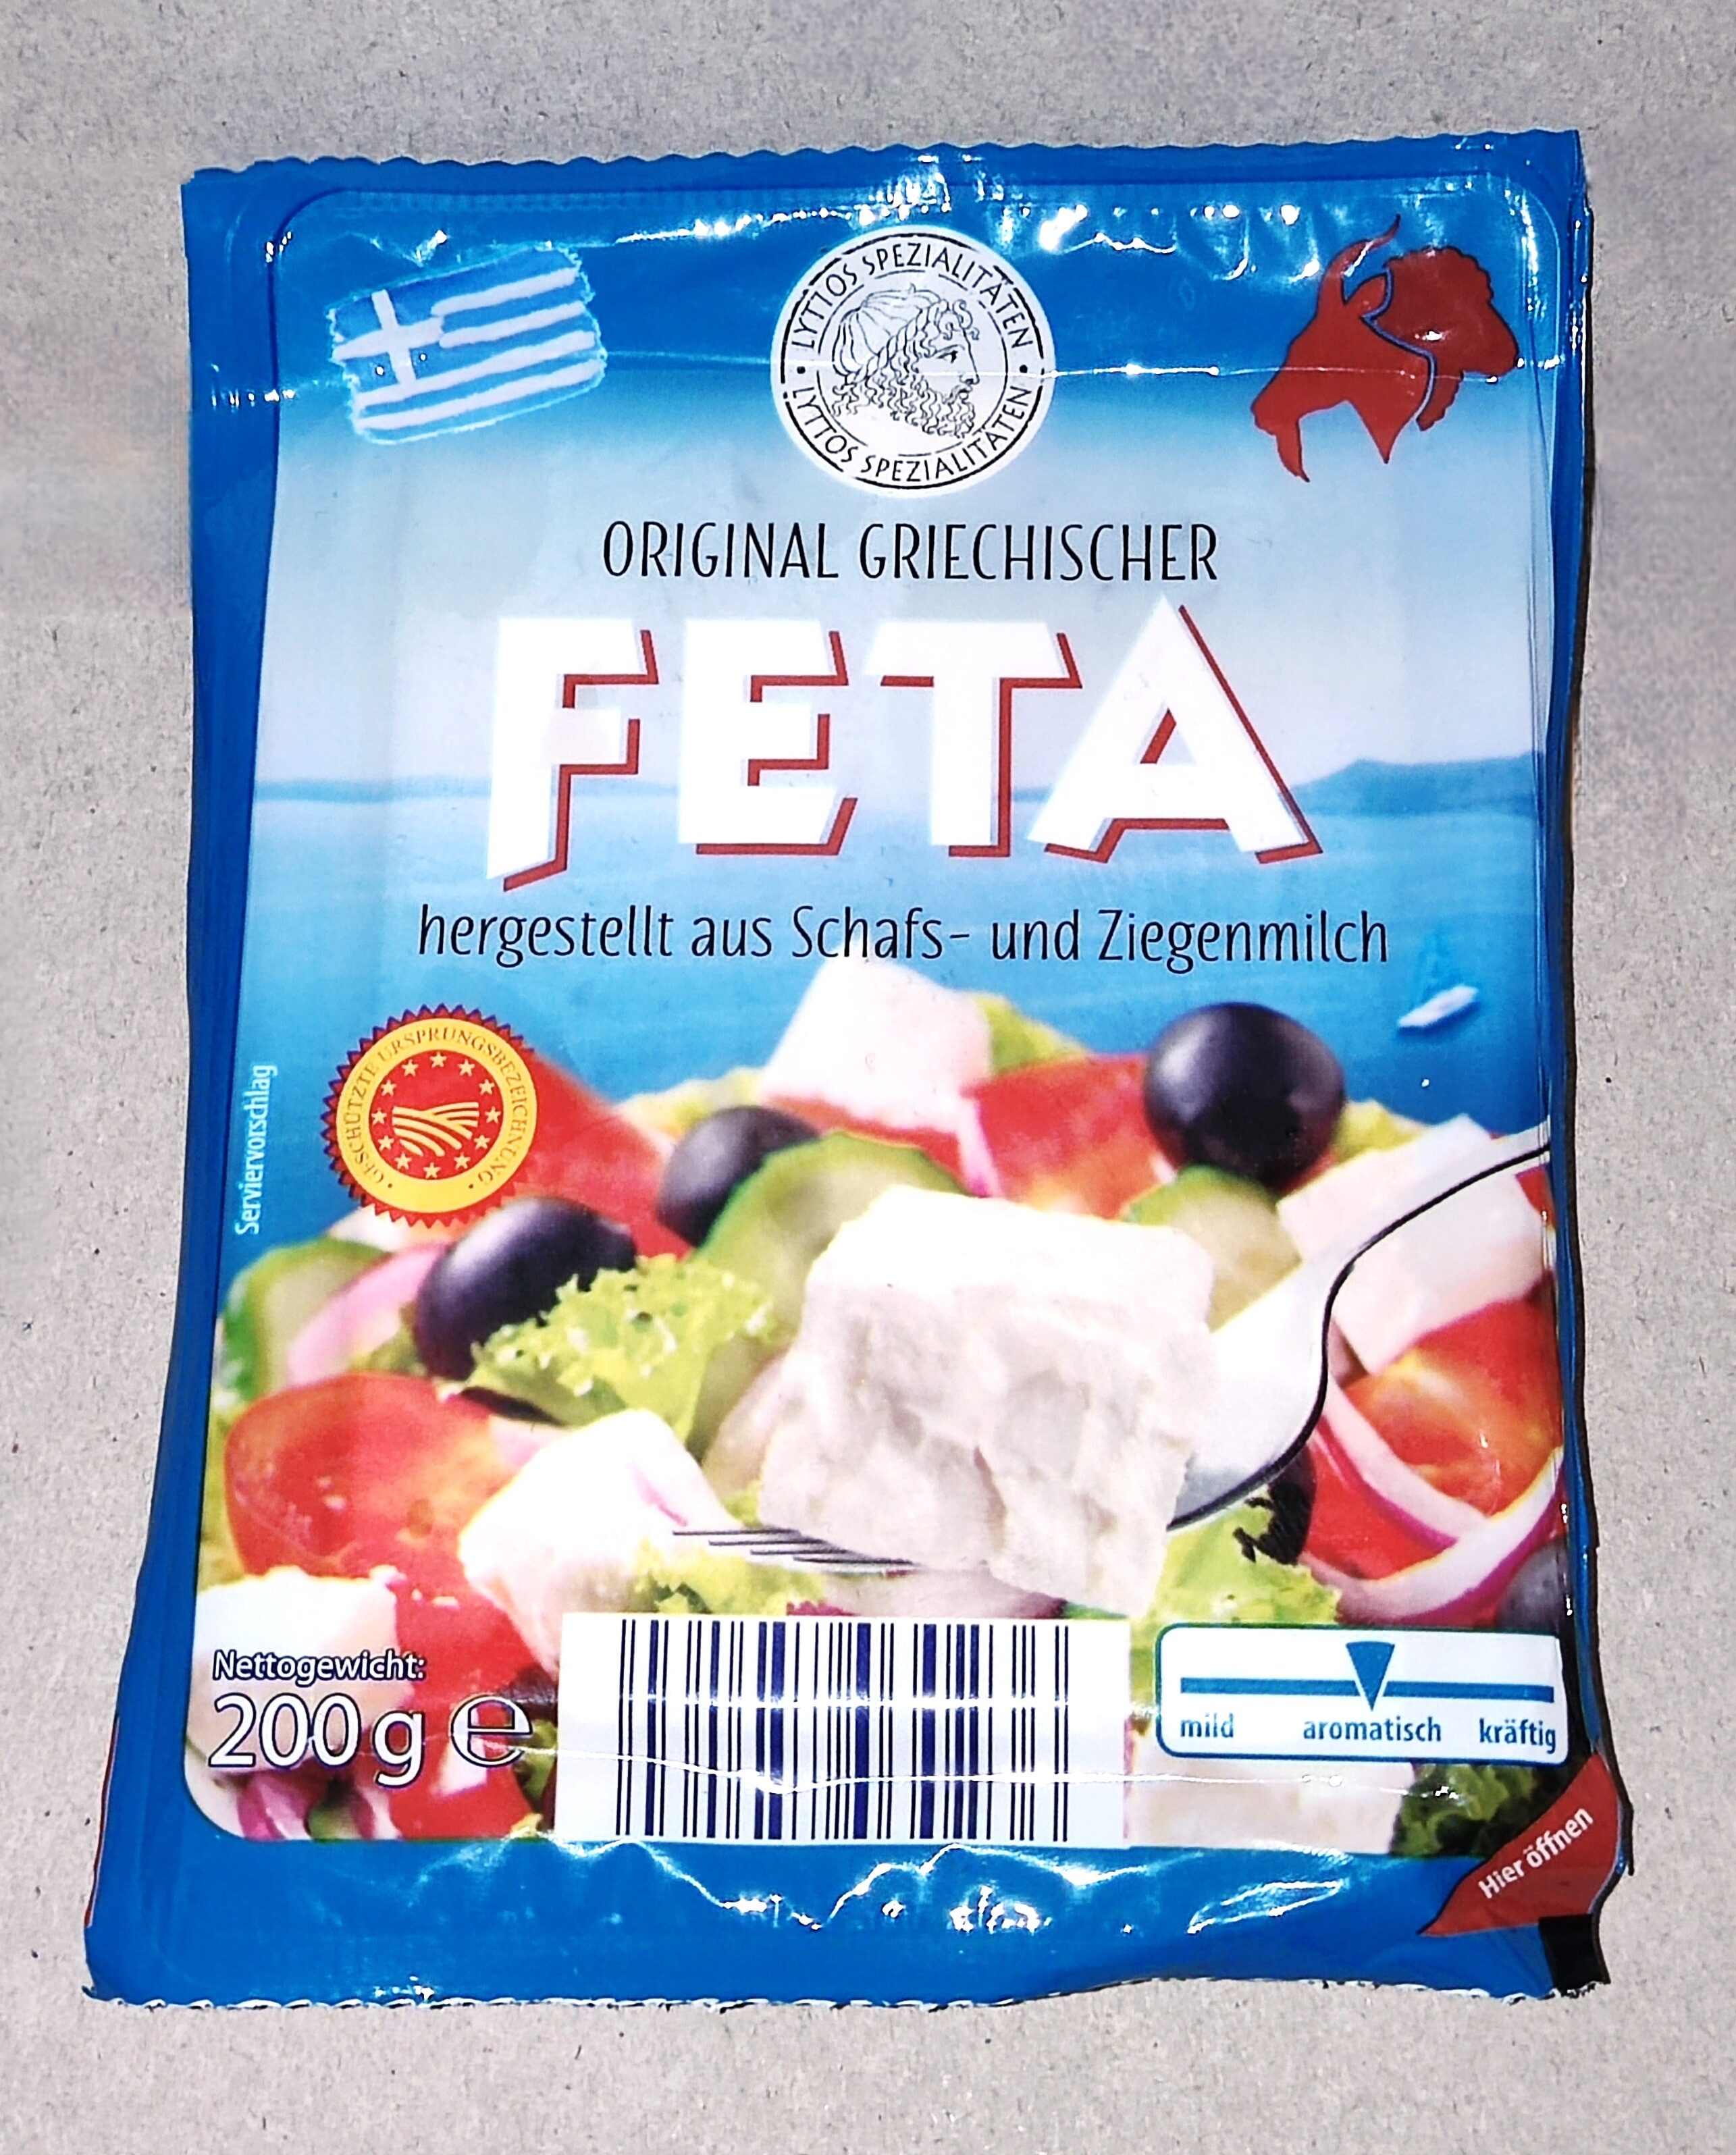 Griechischer Feta - Product - de